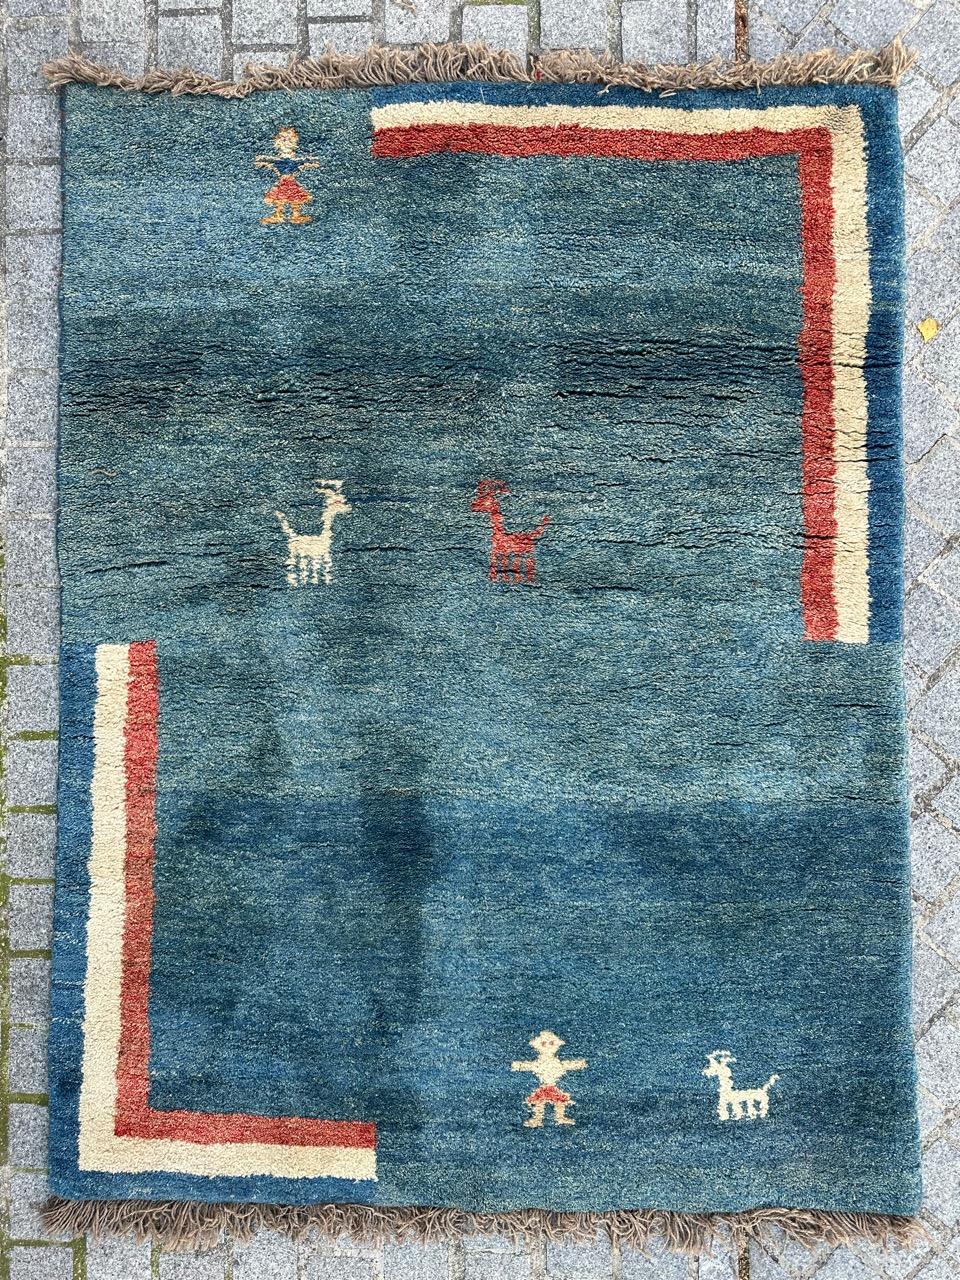 Wir stellen Ihnen einen atemberaubenden Gabbeh-Teppich vor, der in sorgfältiger Handarbeit aus reiner Wolle auf einem Wollfond geknüpft wurde. Dieses exquisite Stück zeichnet sich durch ein geometrisches Stammesmuster aus, das an die Ästhetik des